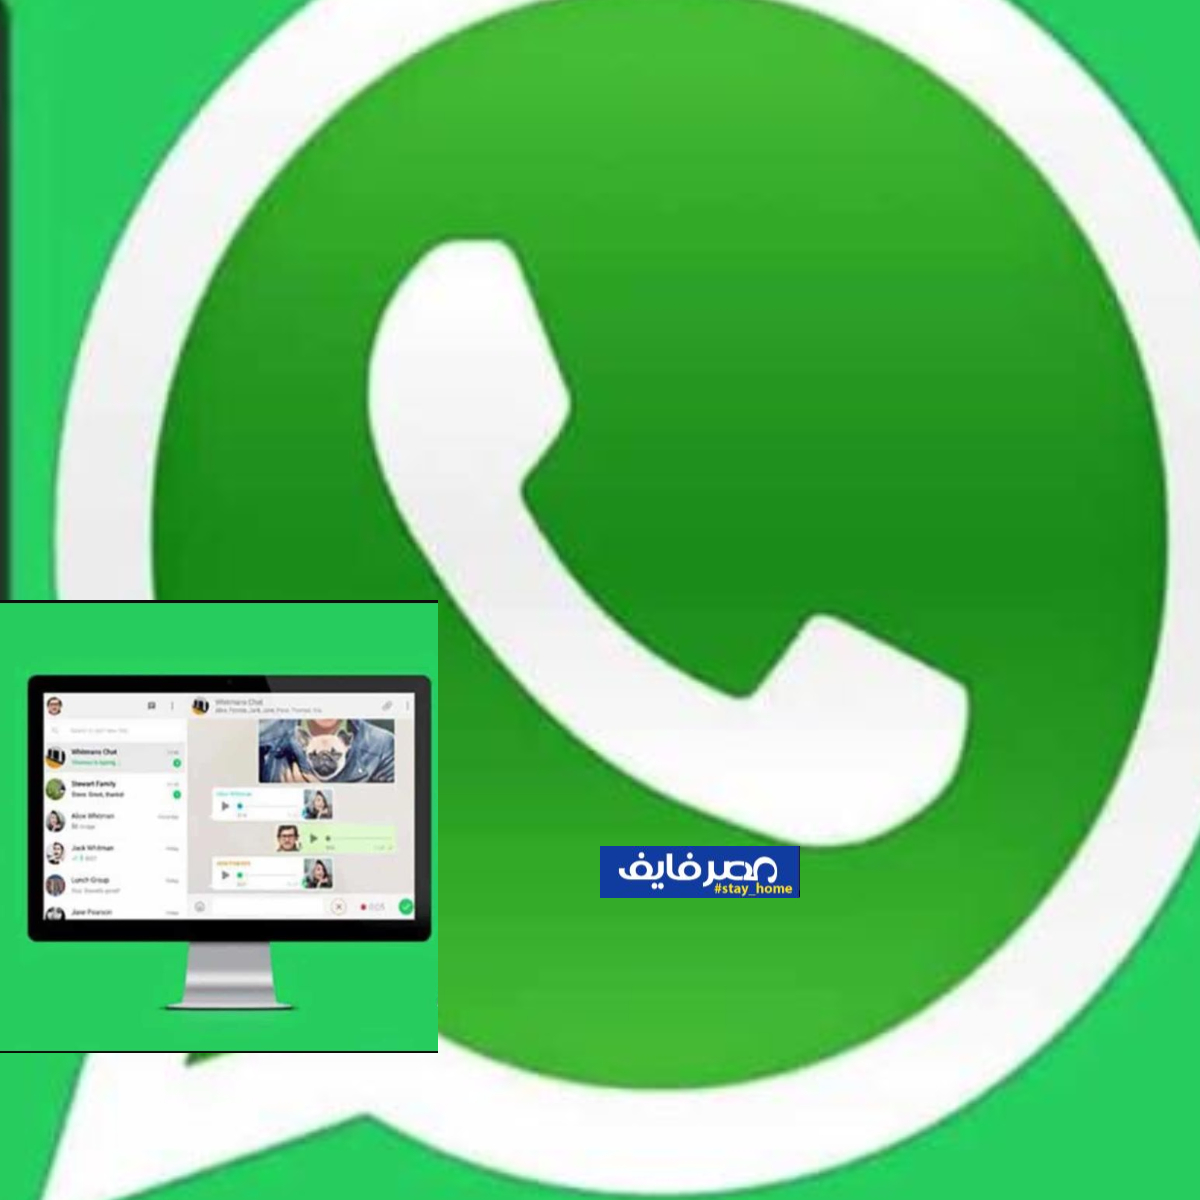 فتح واتساب ويب whatsapp web  على الكمبيوتر شرح طريقتين بالخطوات السهلة والصور